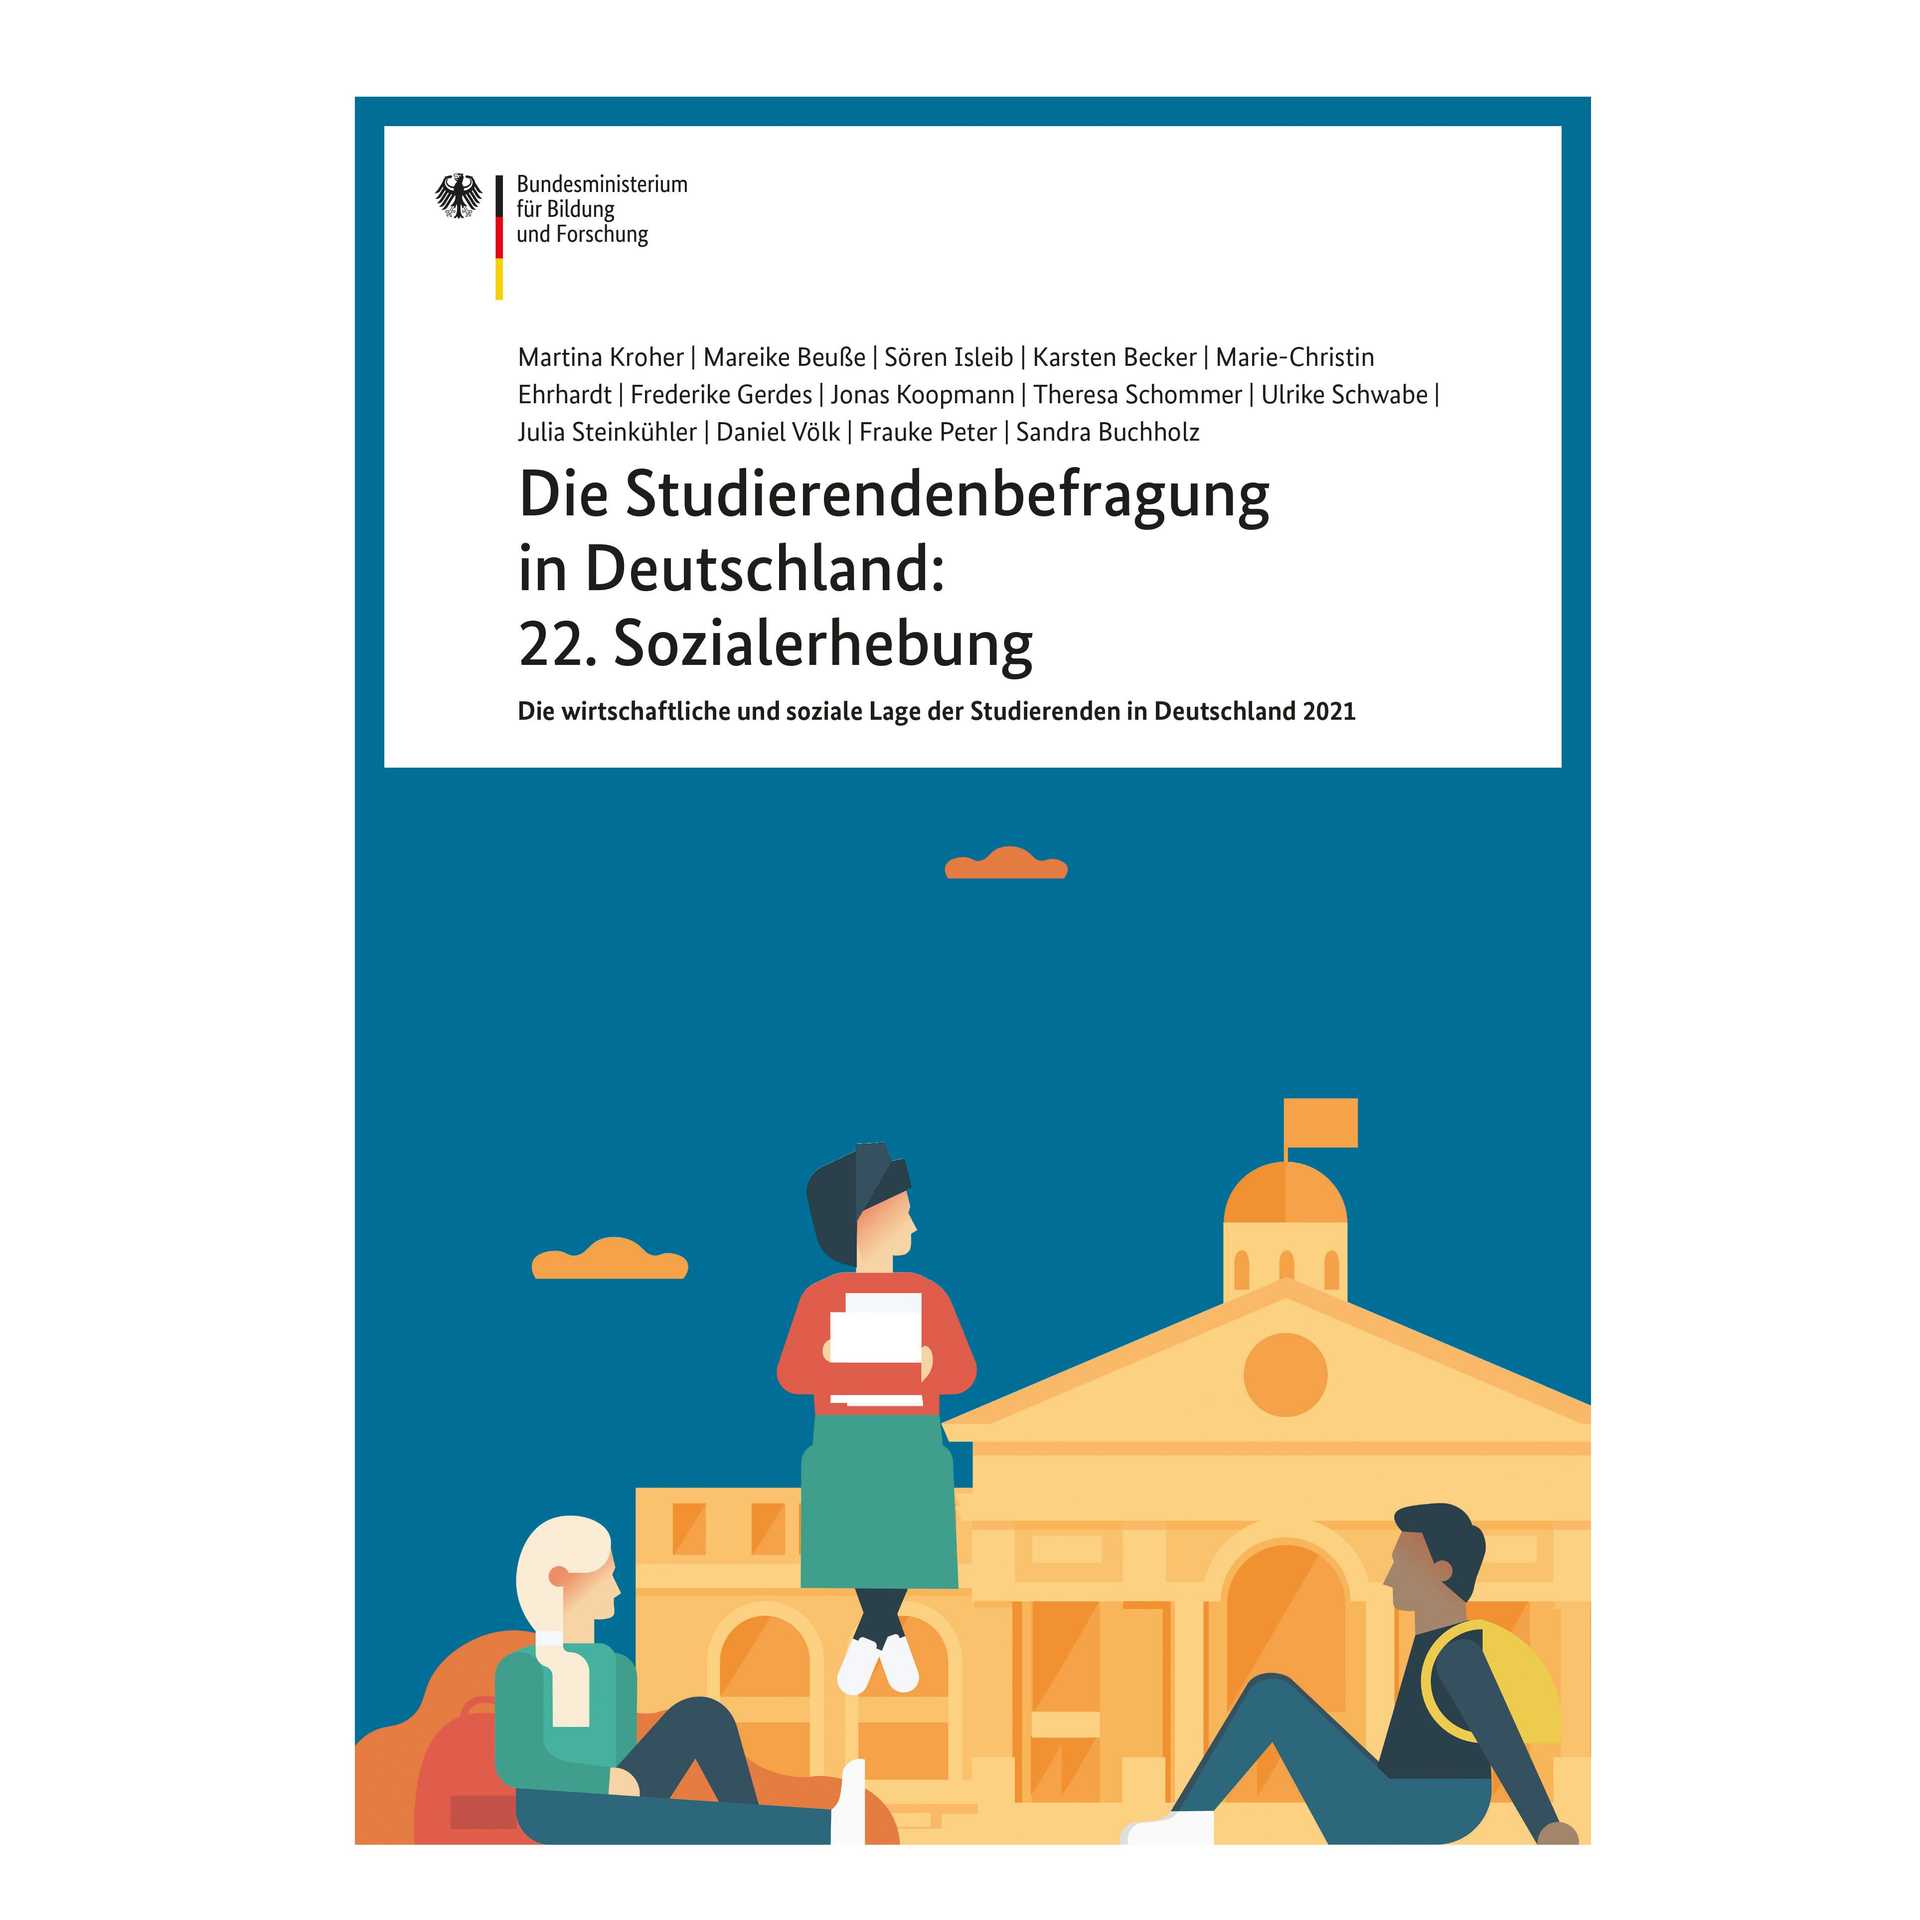 Titelblatt der 22. Sozialerhebung des Bundesministeriums für Bildung und Forschung